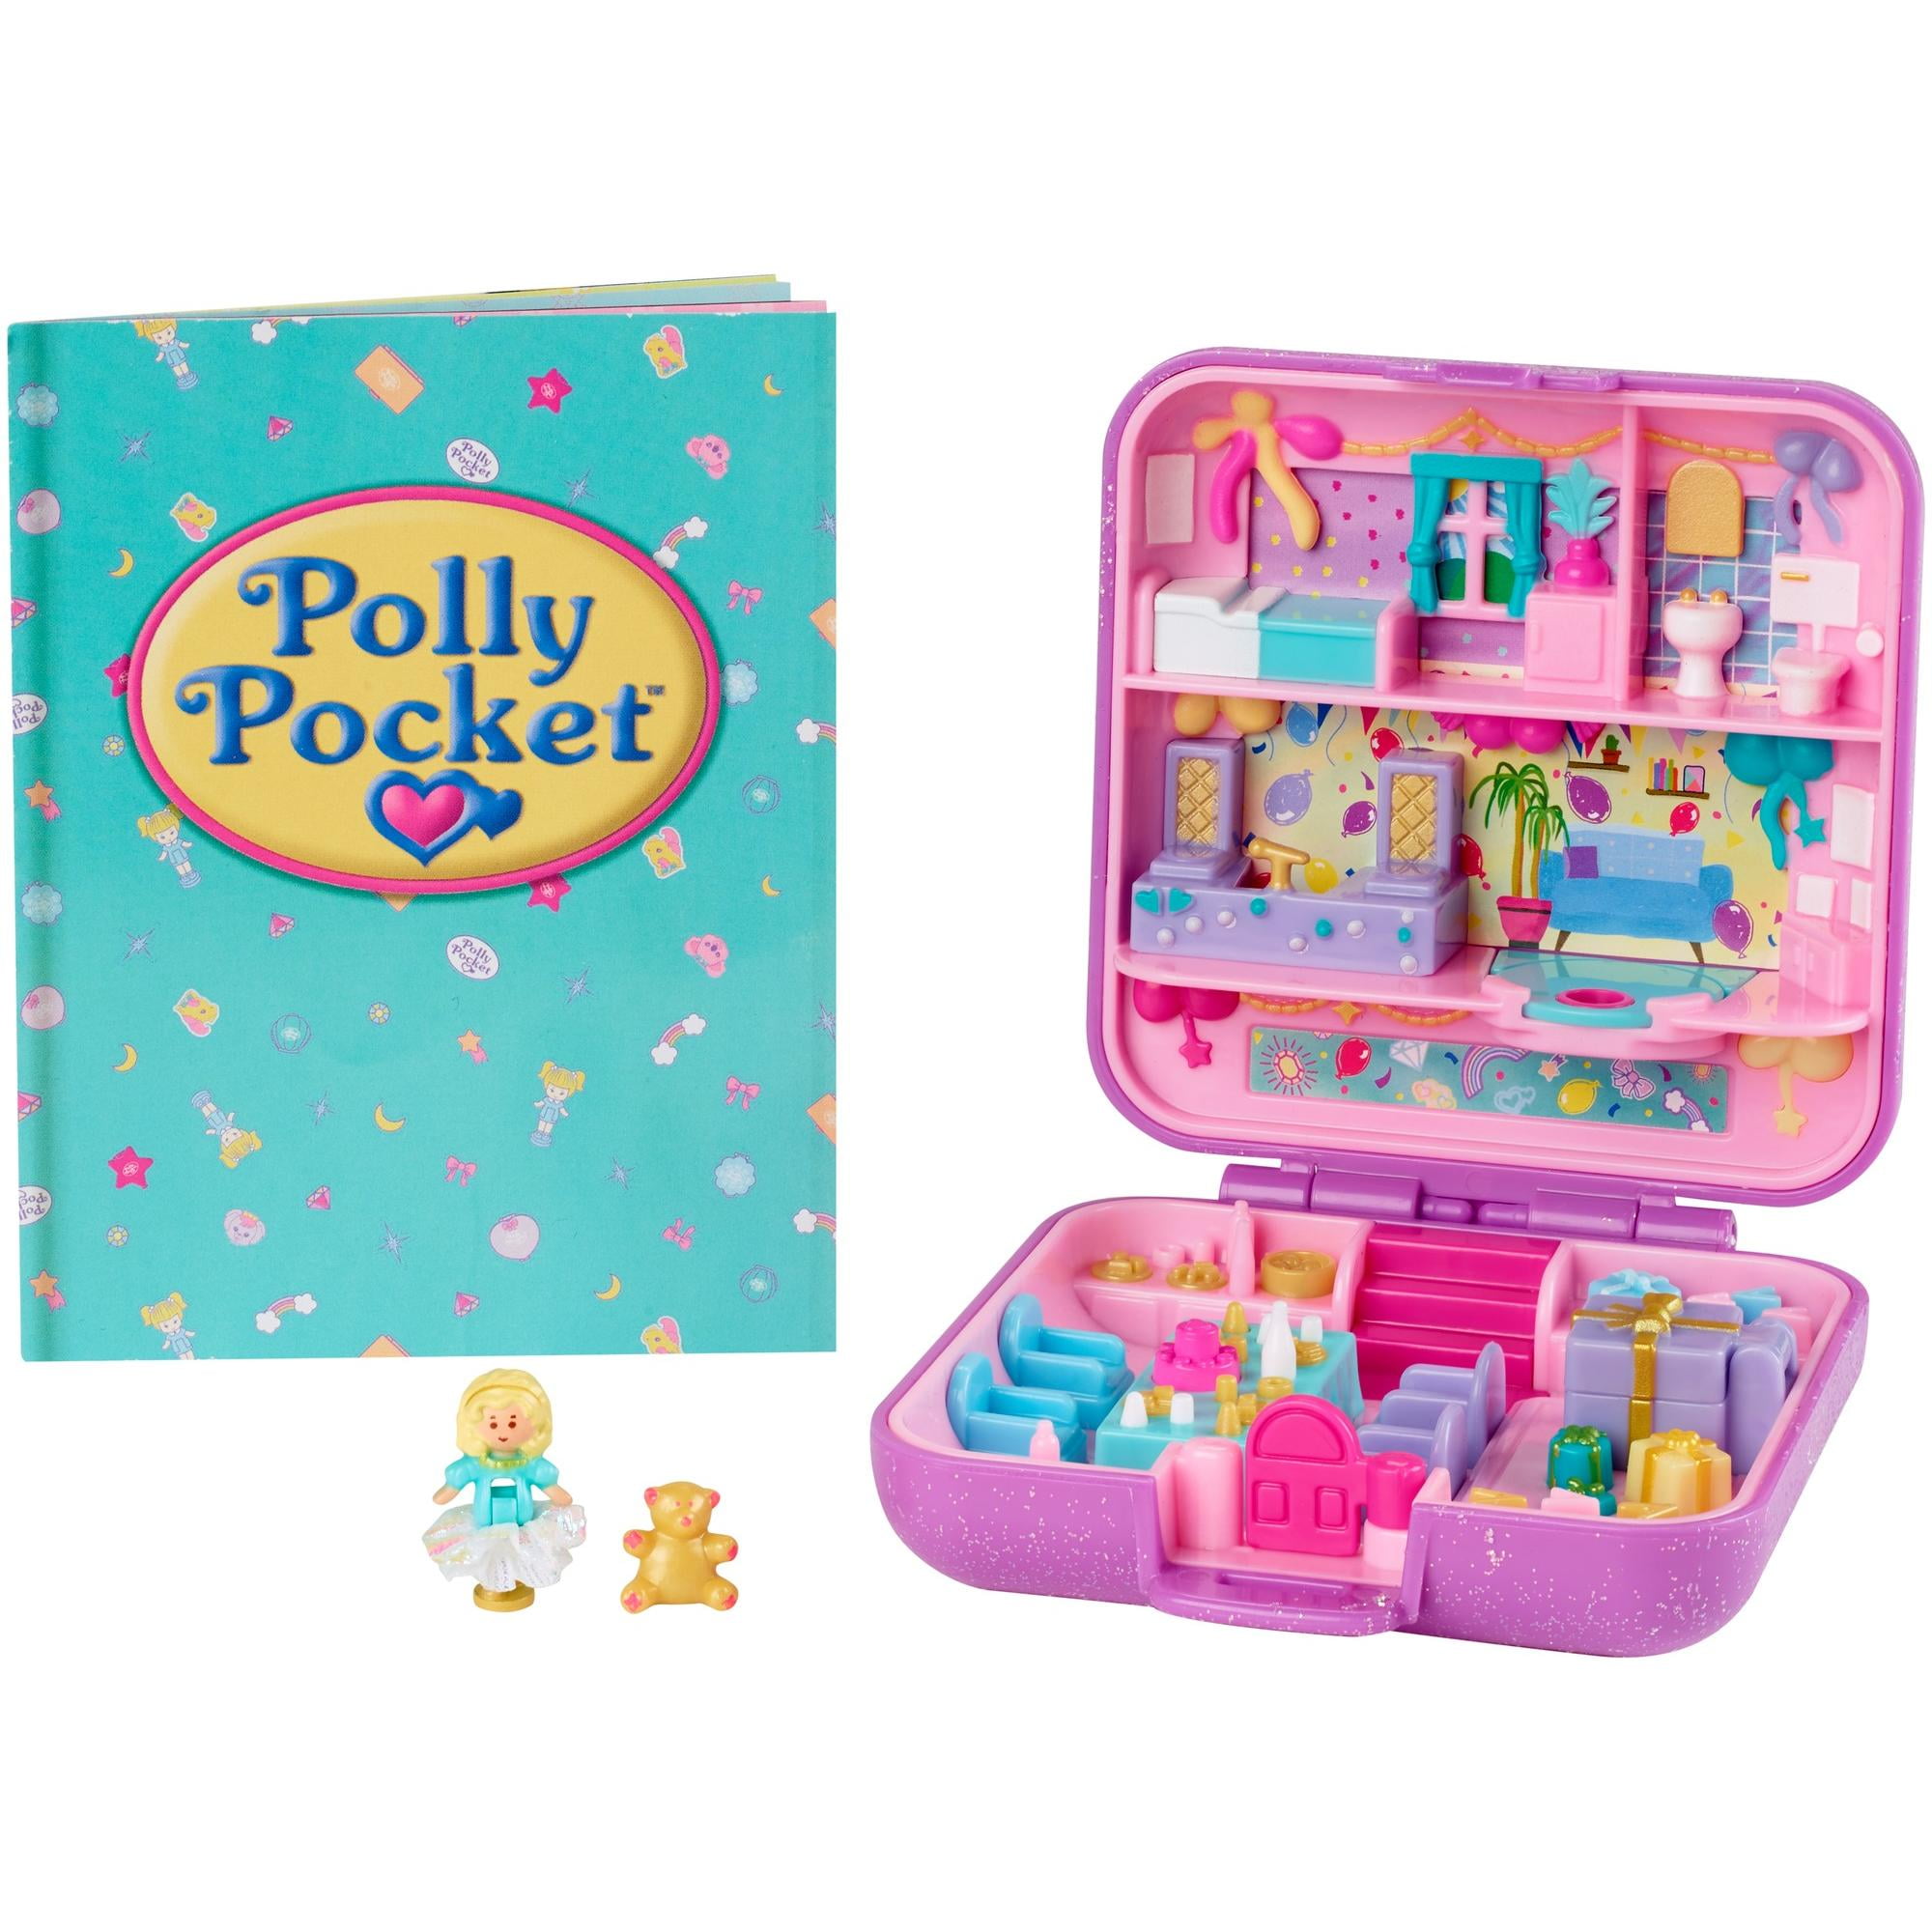 Polly Pocket Festa Do Pijama - Mattel - Brinkpell